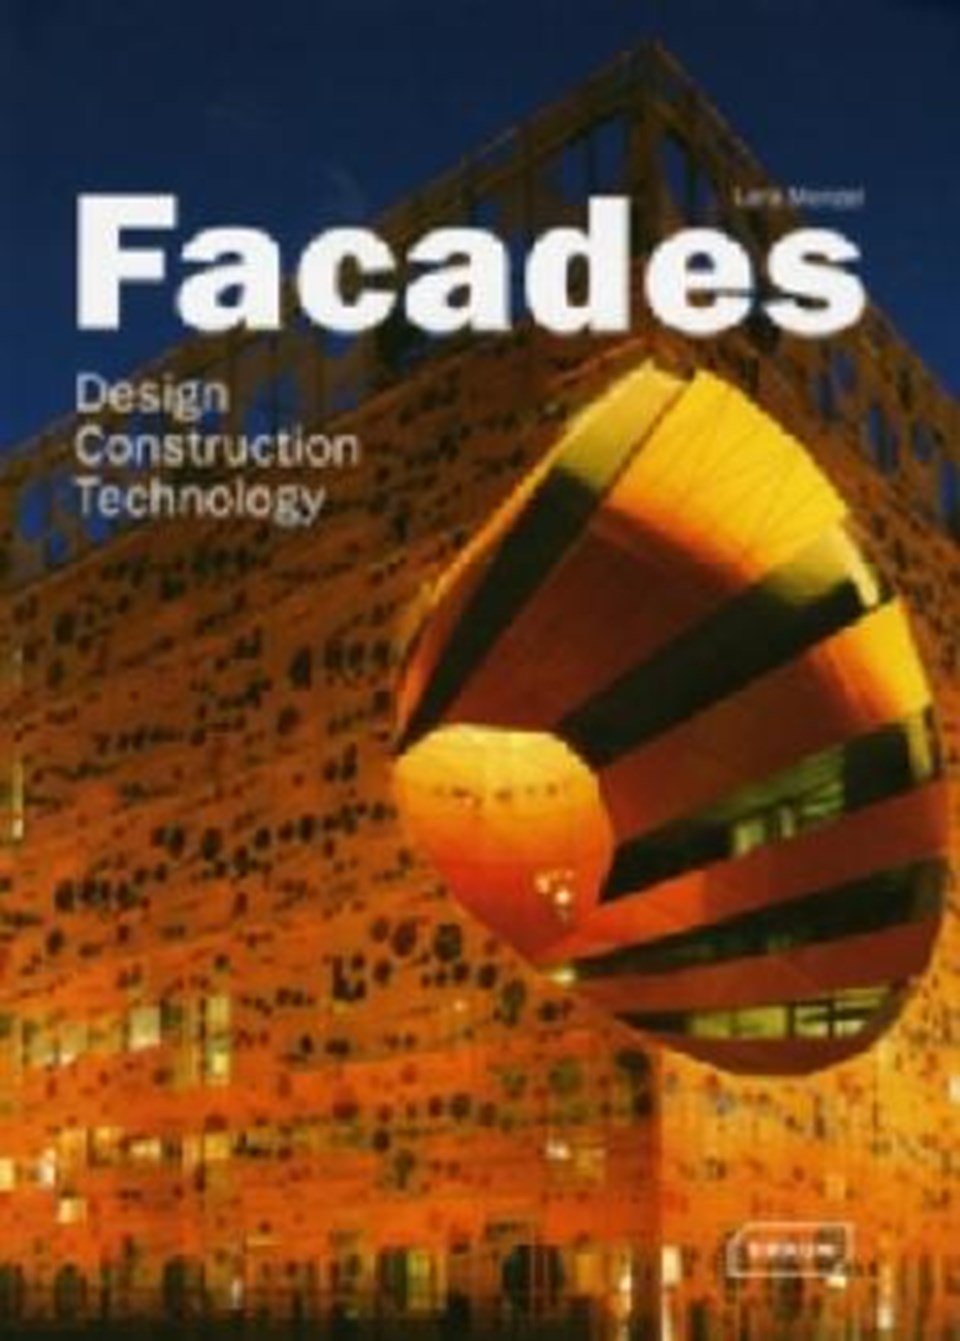 Facades - Design, Construction, Technology